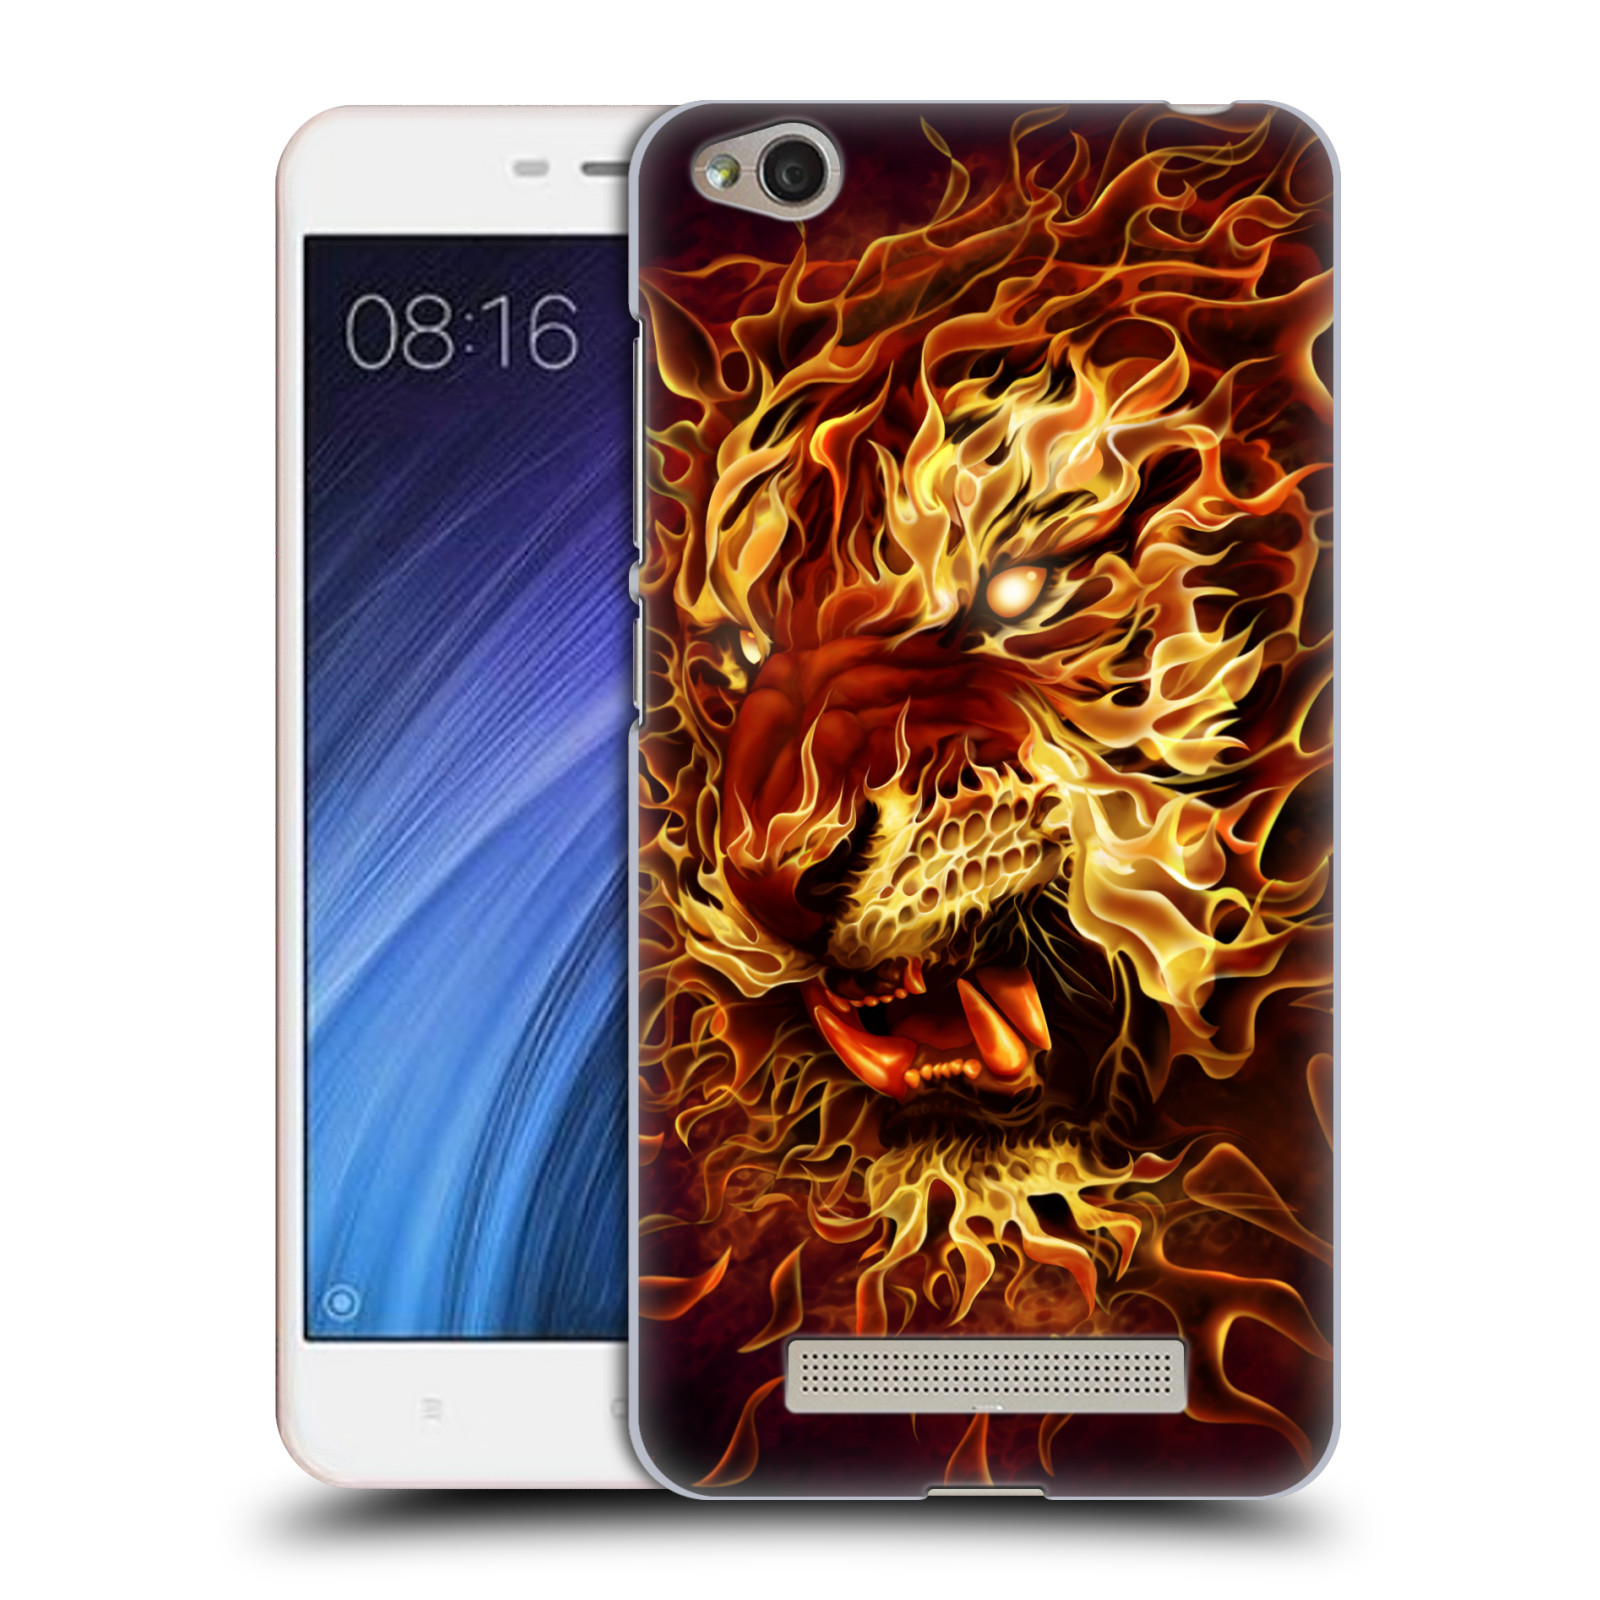 Pouzdro na mobil Xiaomi Redmi 4a - HEAD CASE - Fantasy kresby Tom Wood - Ohnivý tygr